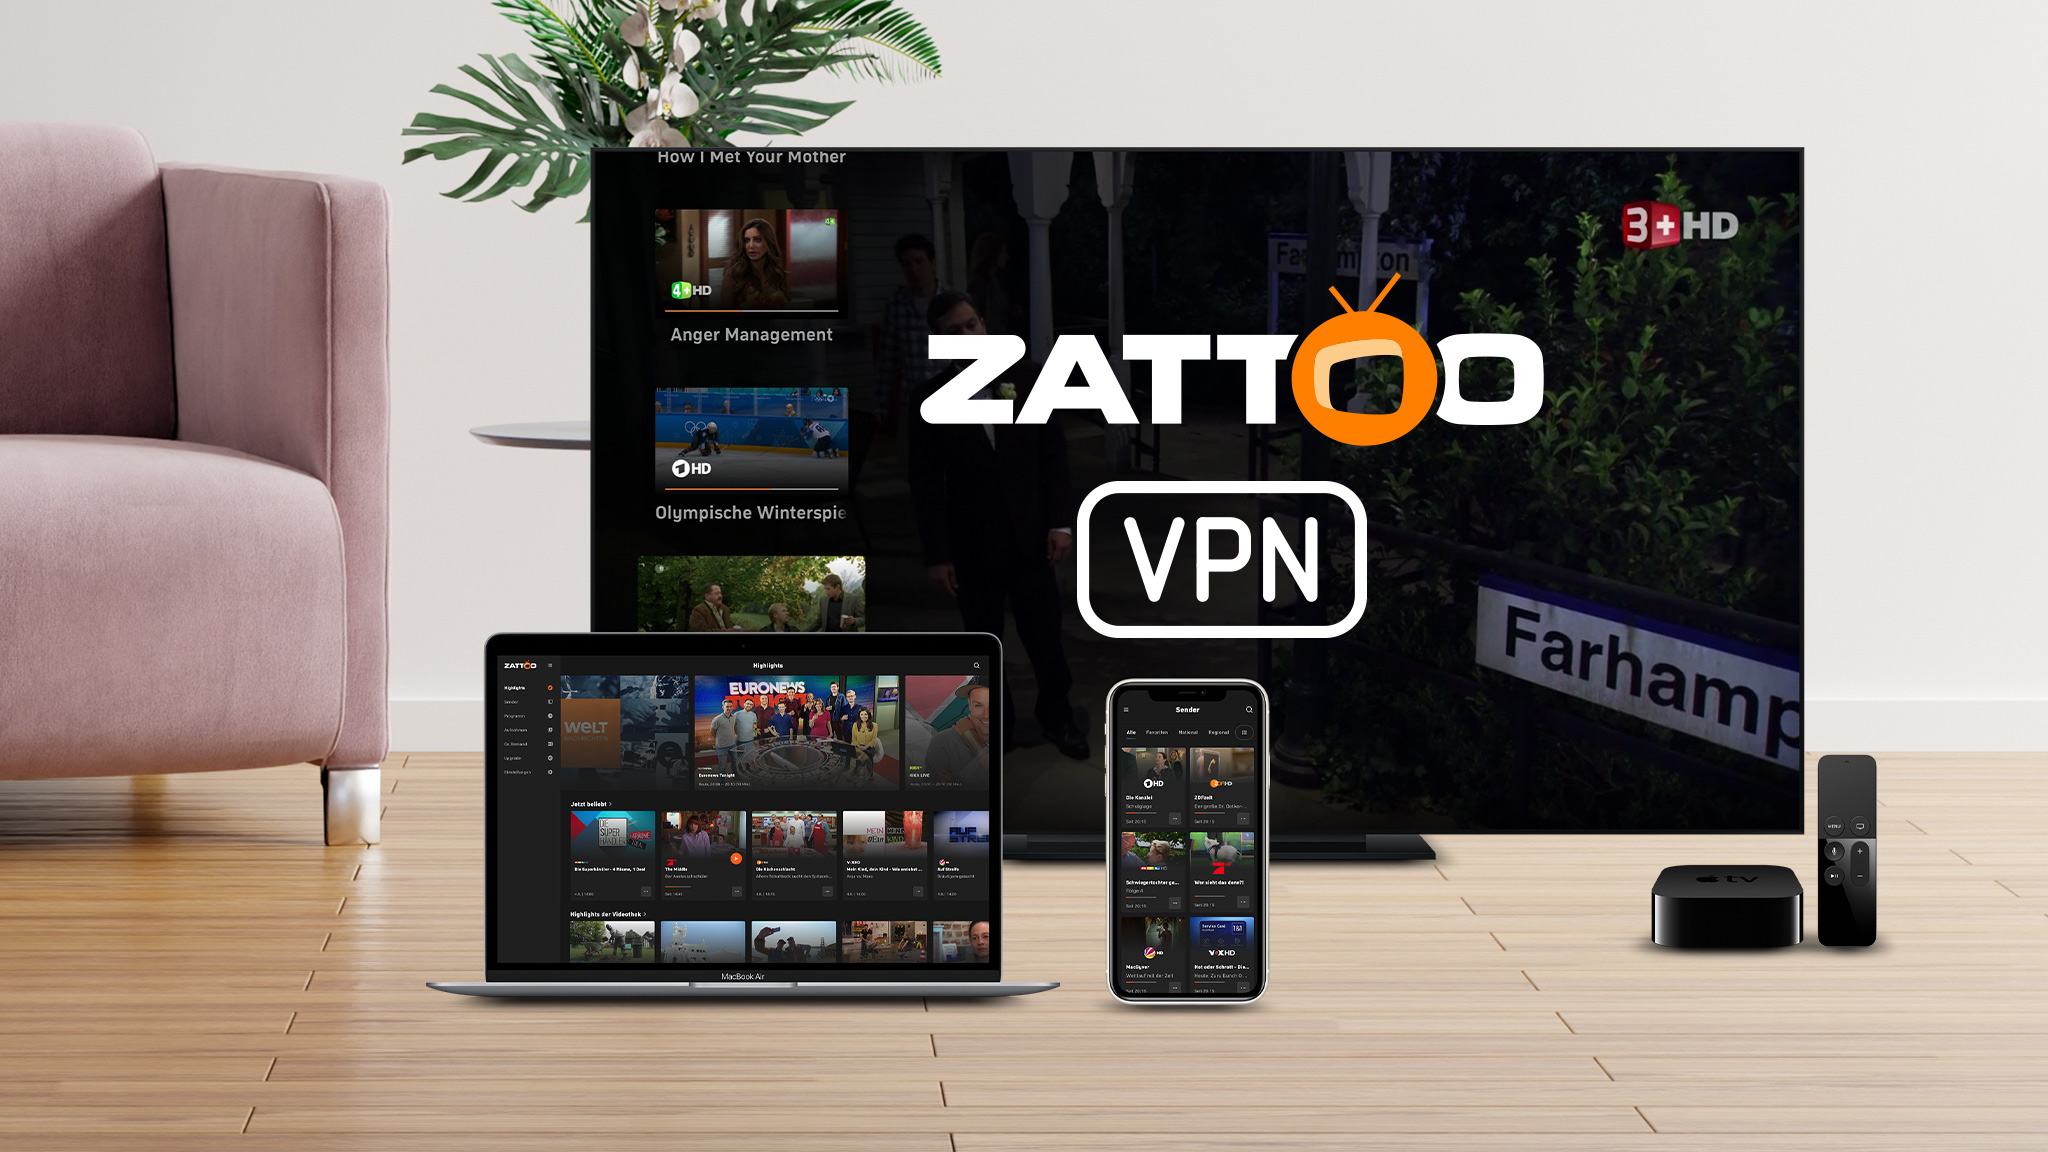 Zattoo kostenlos: So streamen Sie fast 200 TV-Sender gratis